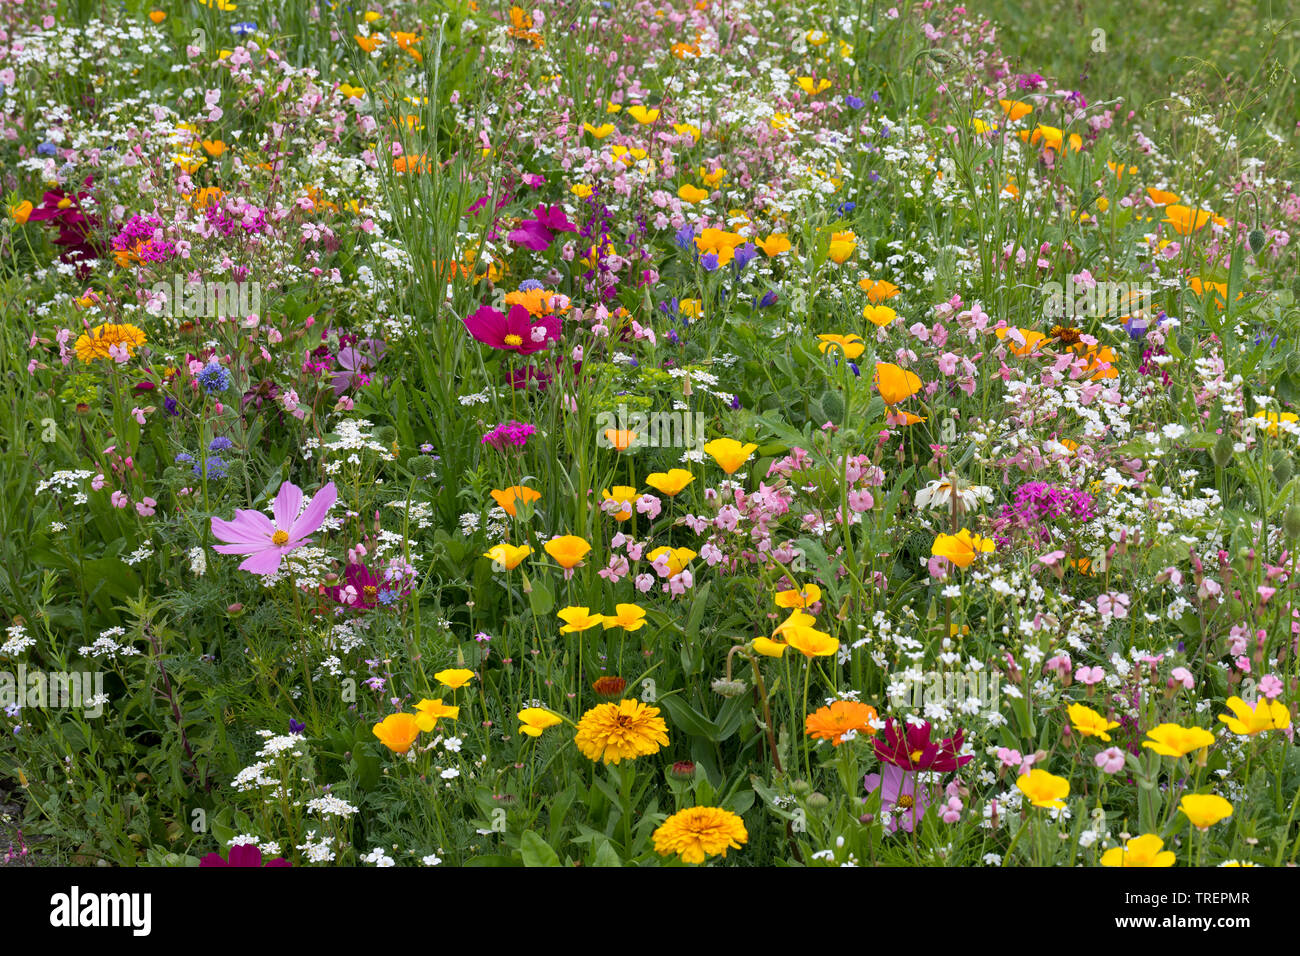 Blumenwiese, Wildblumenwiese, Wildblumen-Wiese, Blumenmischung, Wildblumen, Blumenmischung 'Werratal', Insektenschutz, wildflower meadow Stock Photo